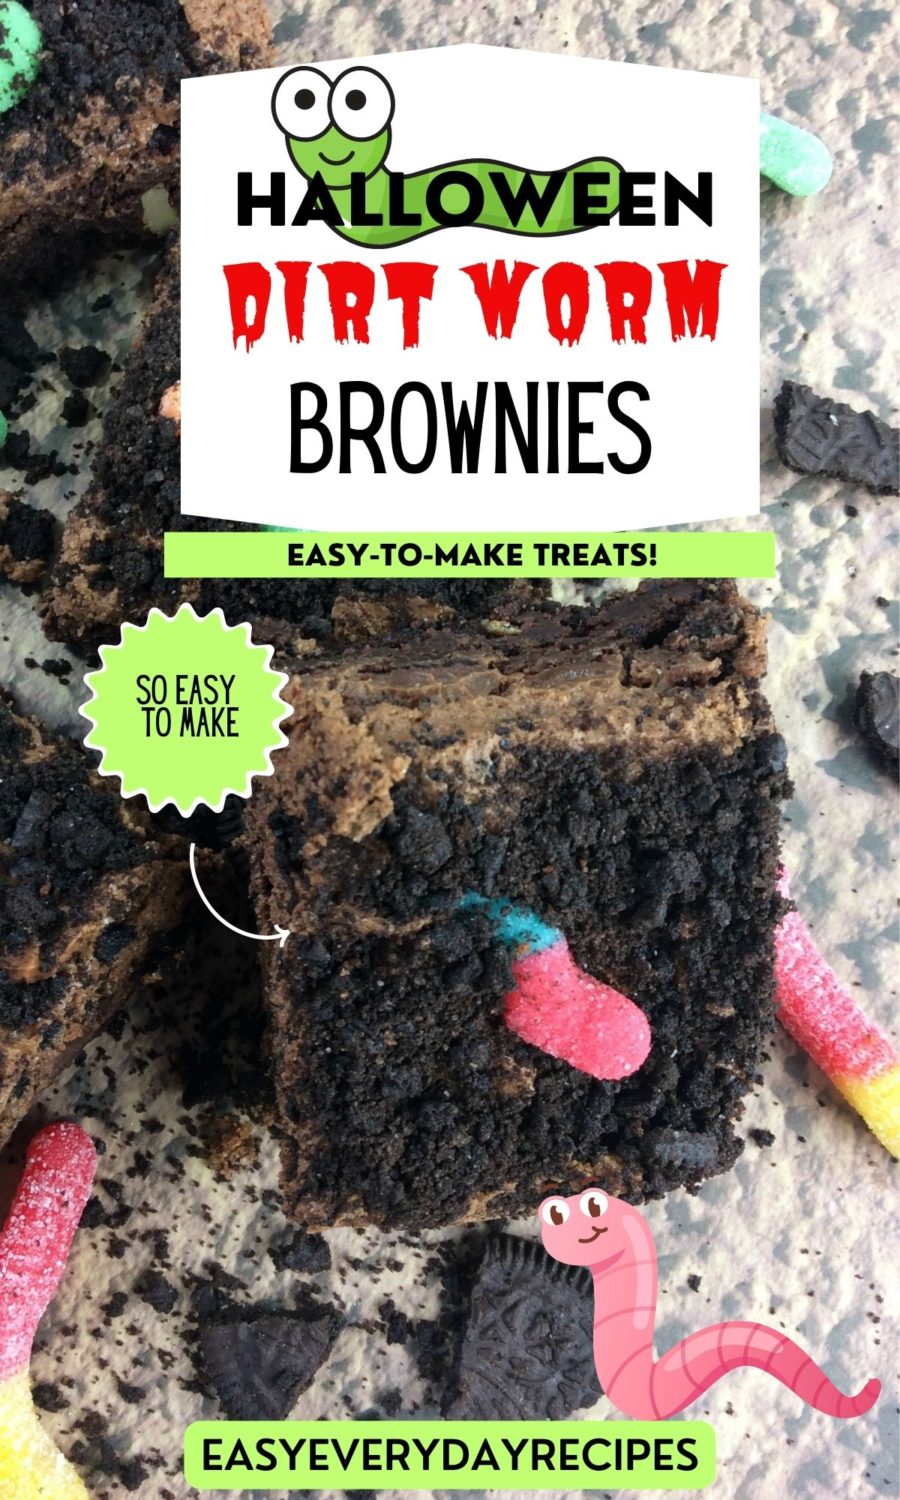 Halloween dirt worm brownies.